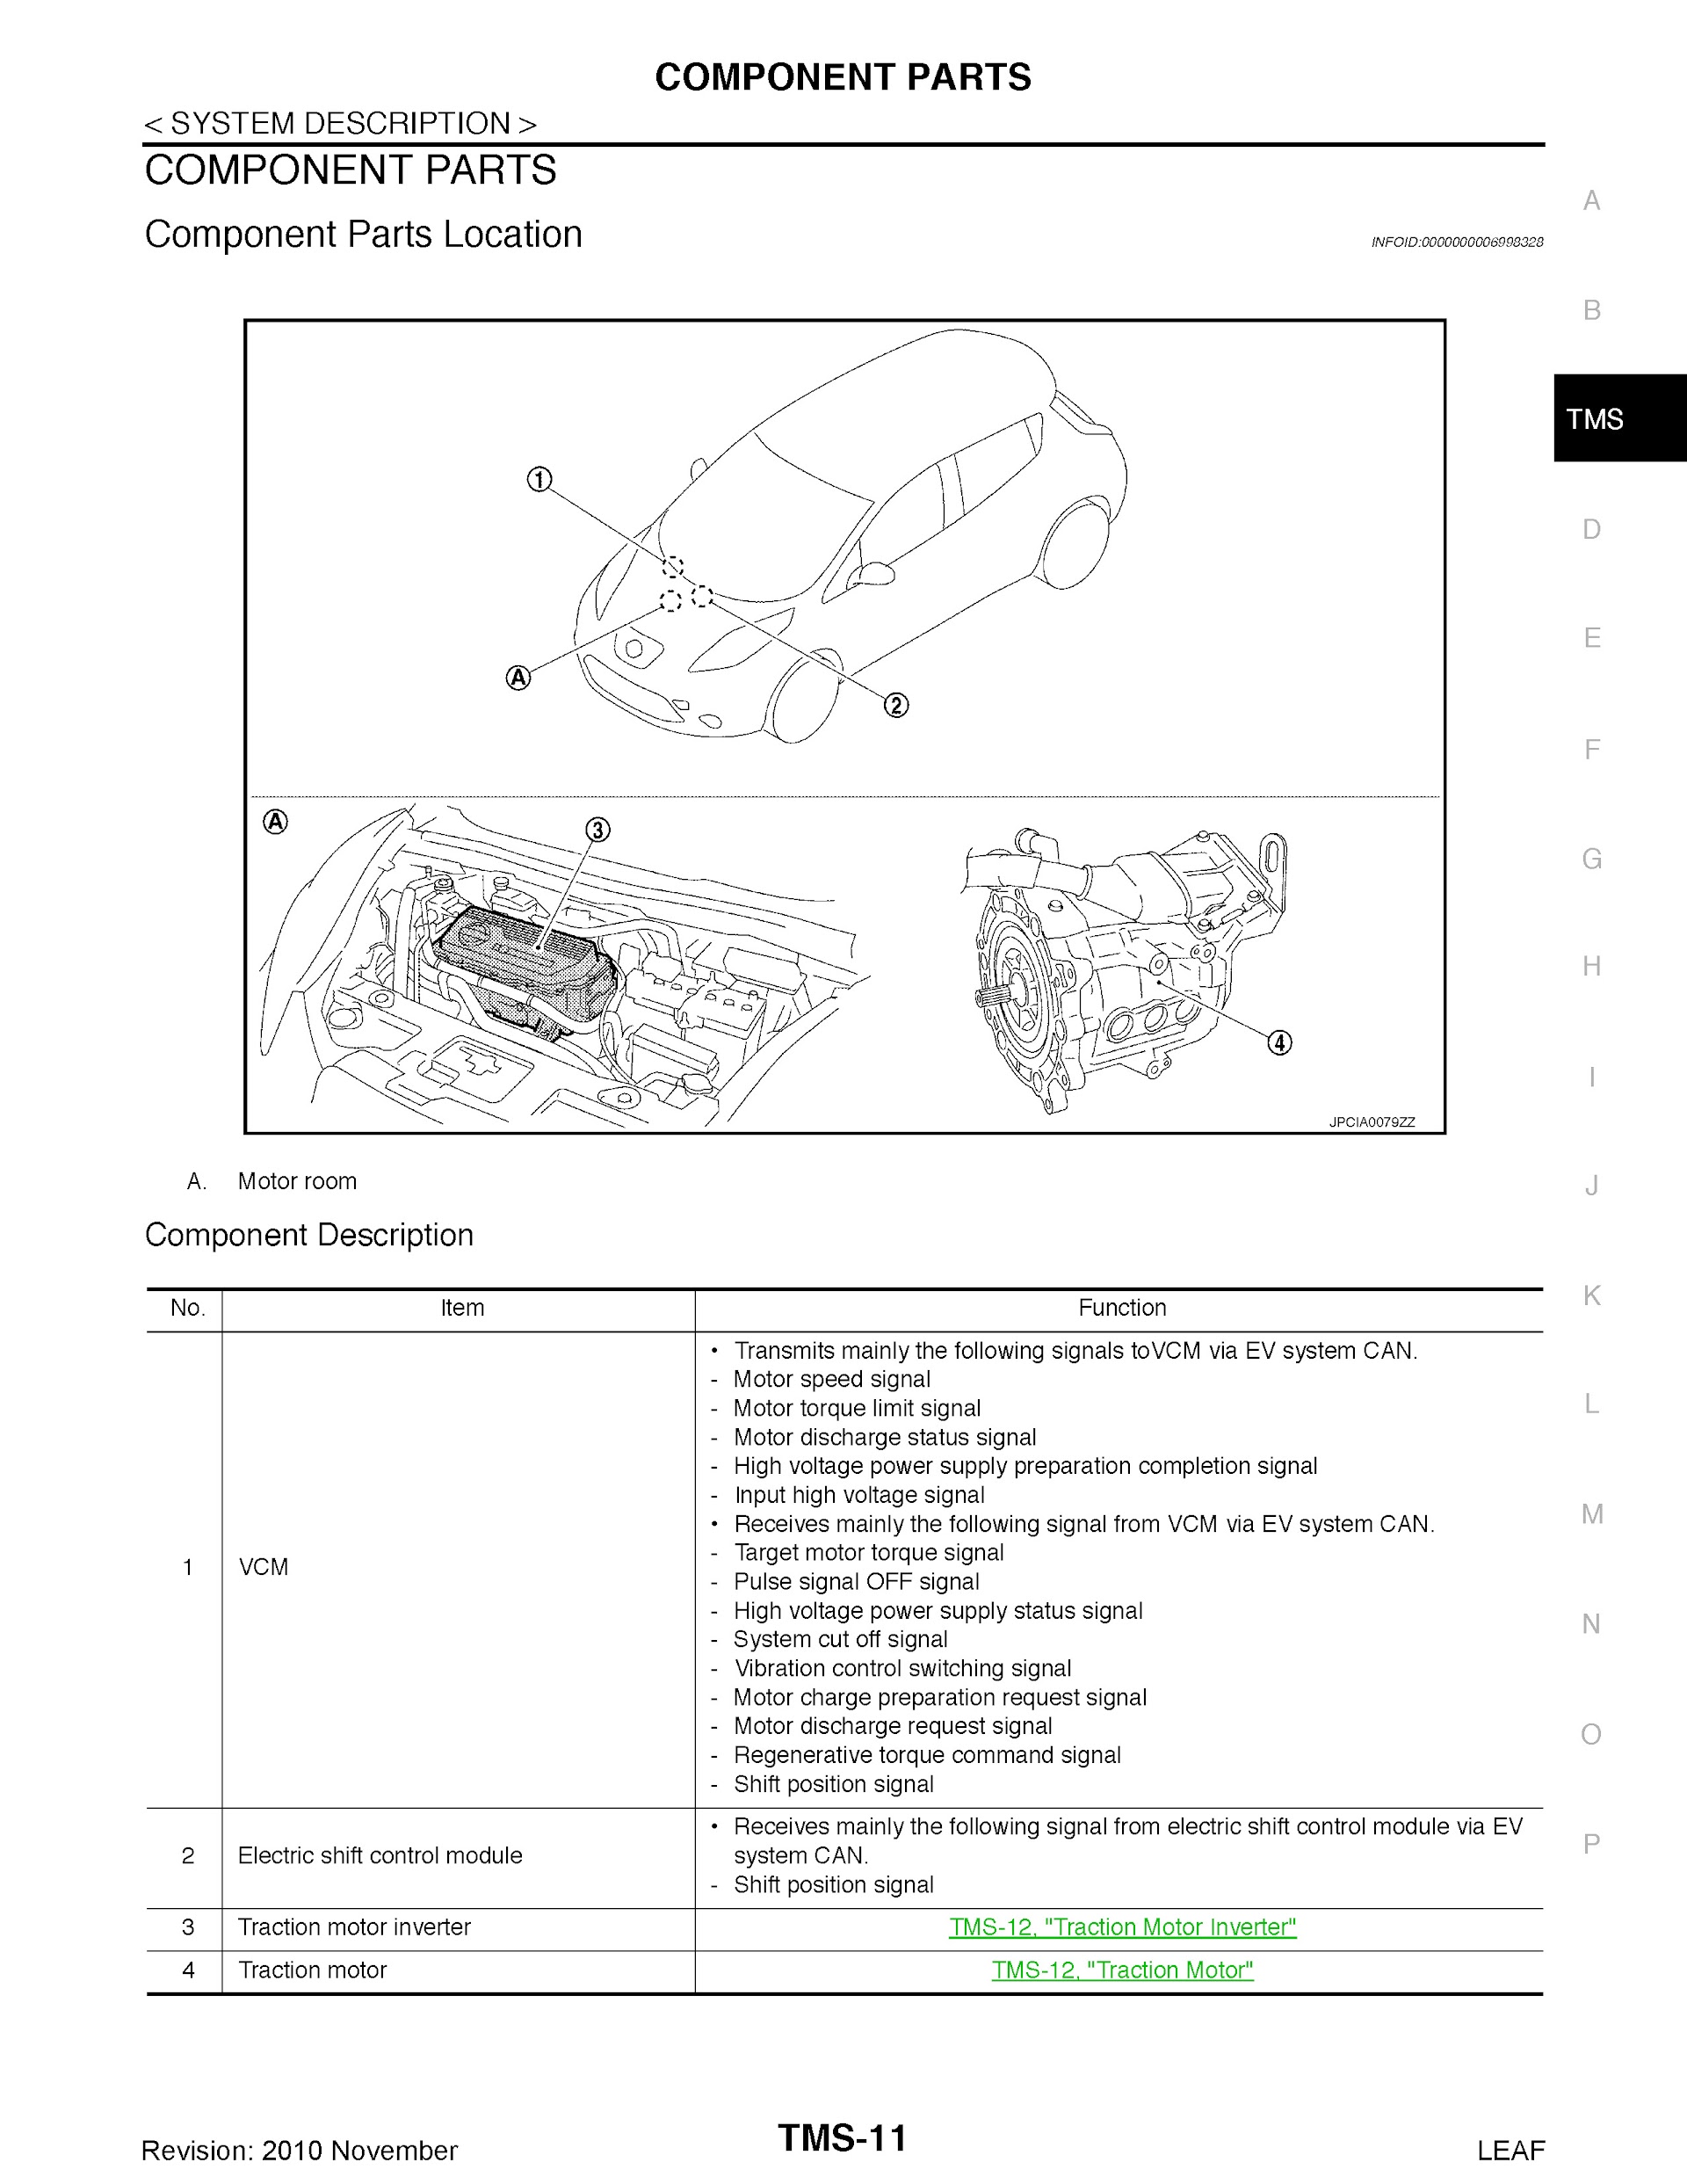 2010-2011 Nissan Leaf Repair Manual.